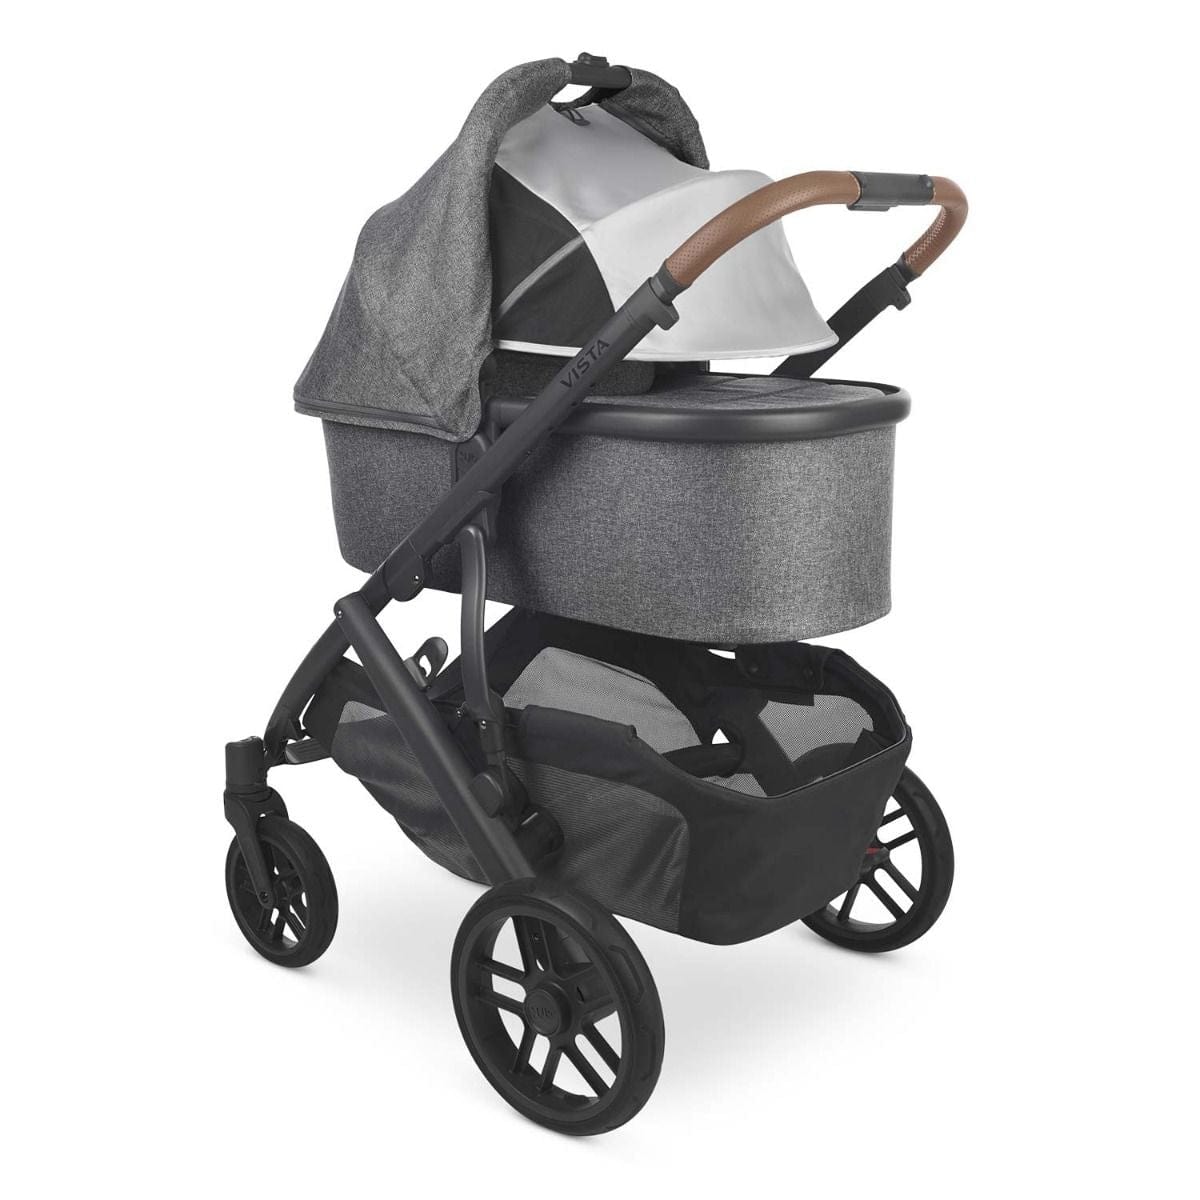 UPPAbaby stroller UPPAbaby VISTA V2 Stroller - Greyson (Charcoal Melange/Carbon/Saddle Leather)